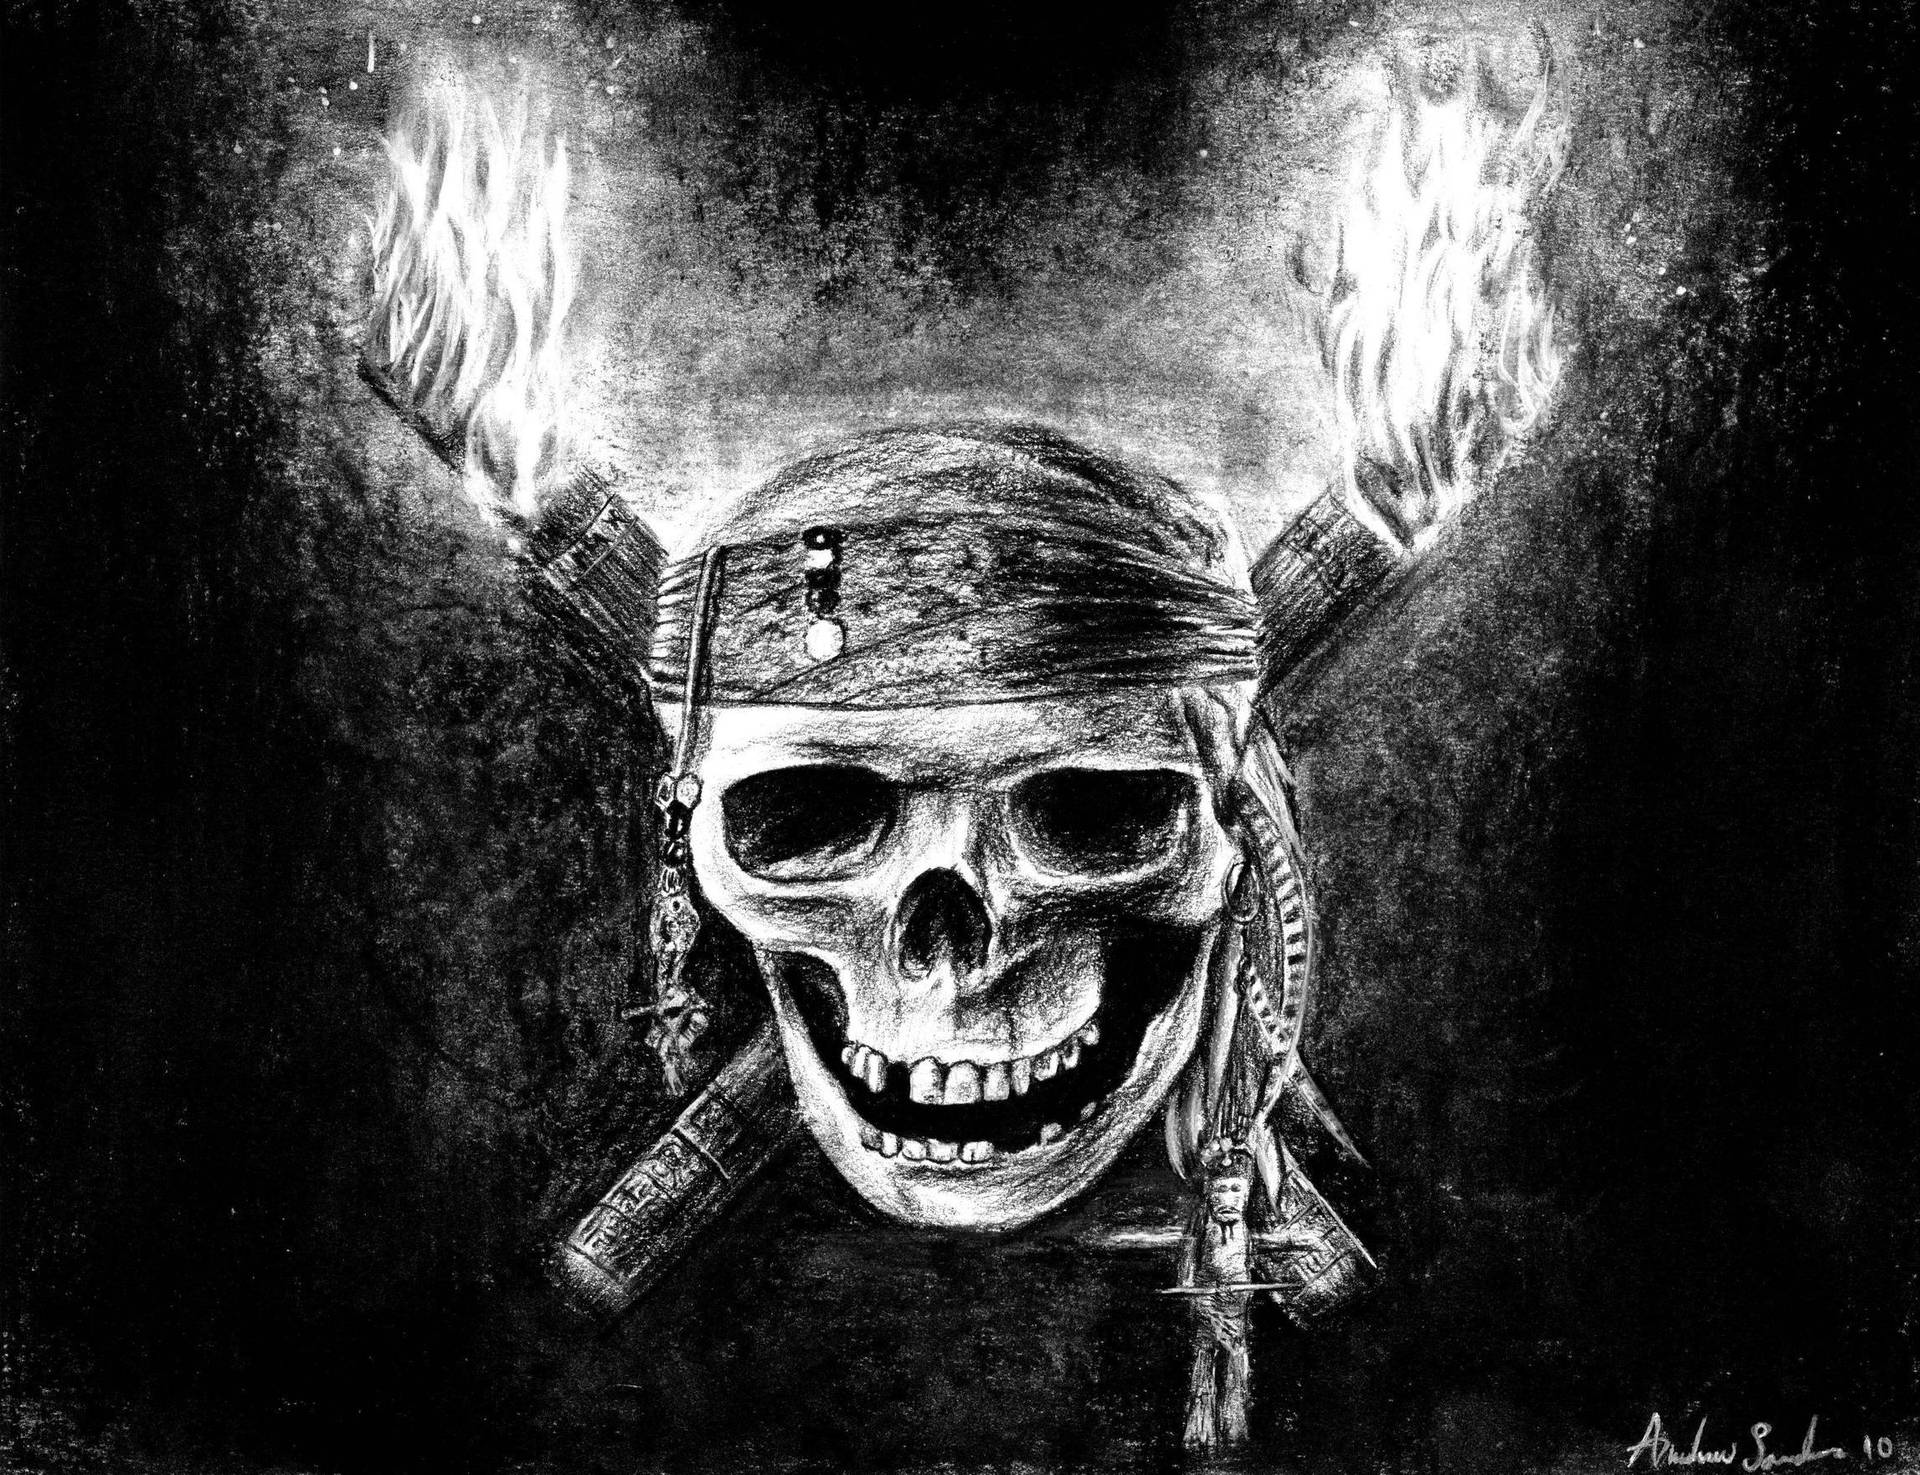 Hd Skull With Pirate Bandana